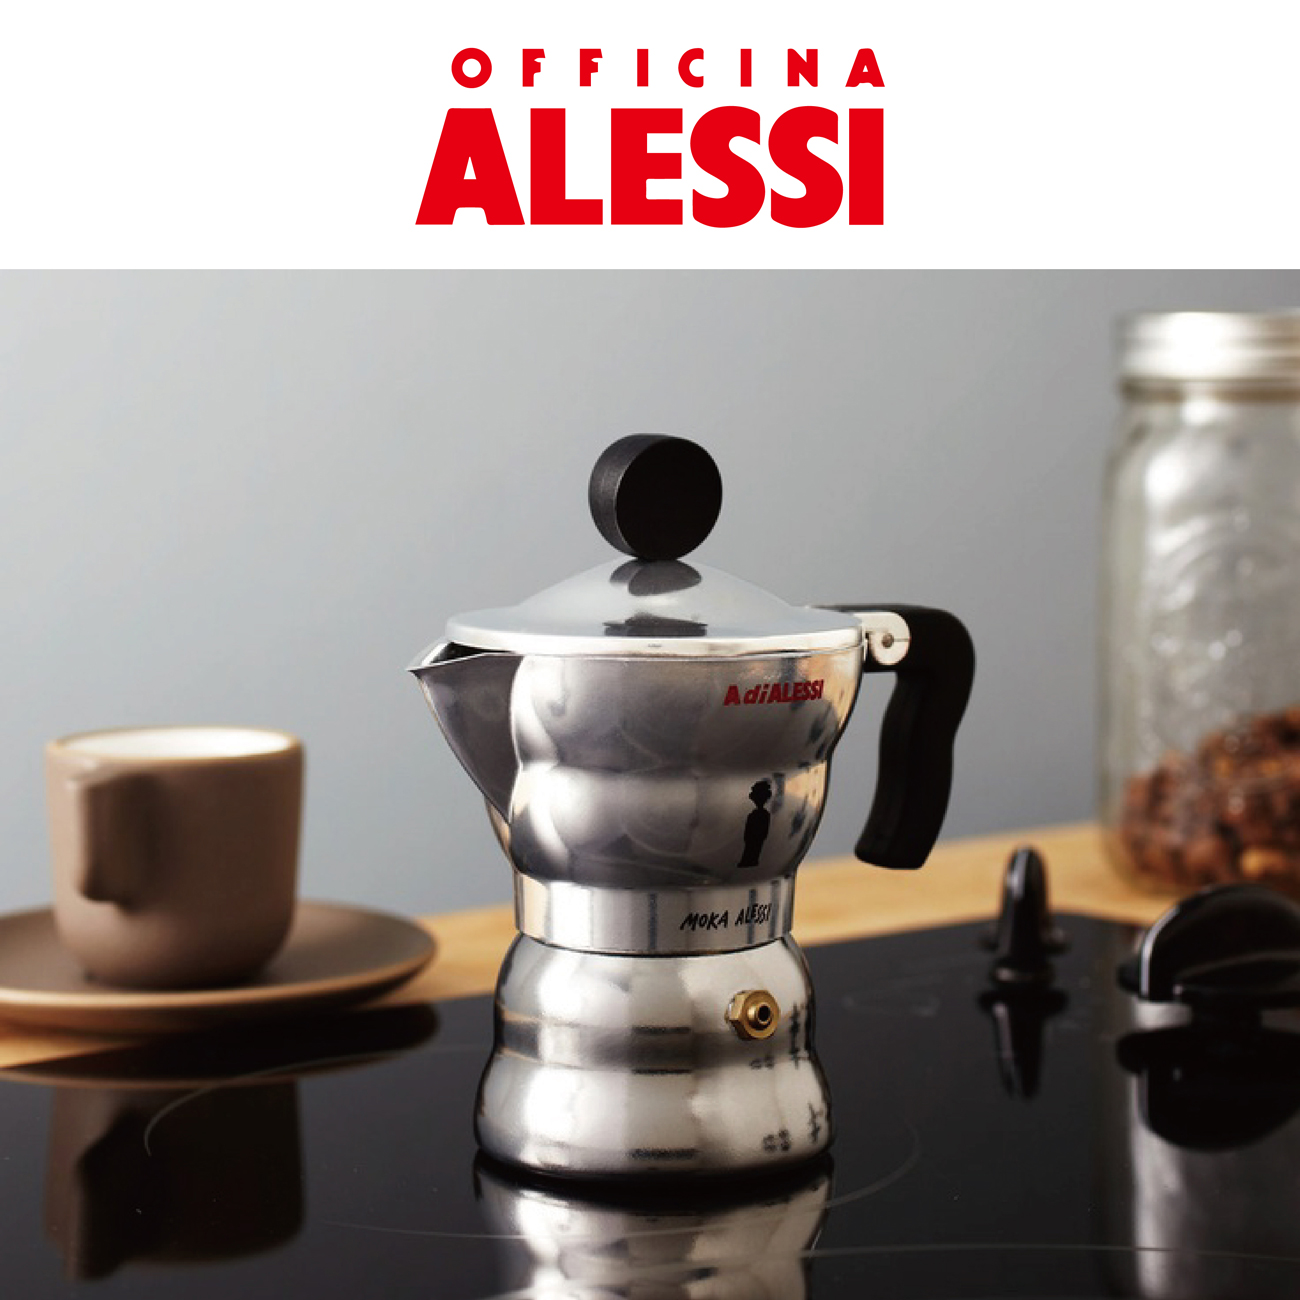 ALESSI 摩卡壶  浓缩咖啡壶3人份 意式家用不锈钢咖啡壶 咖啡器具